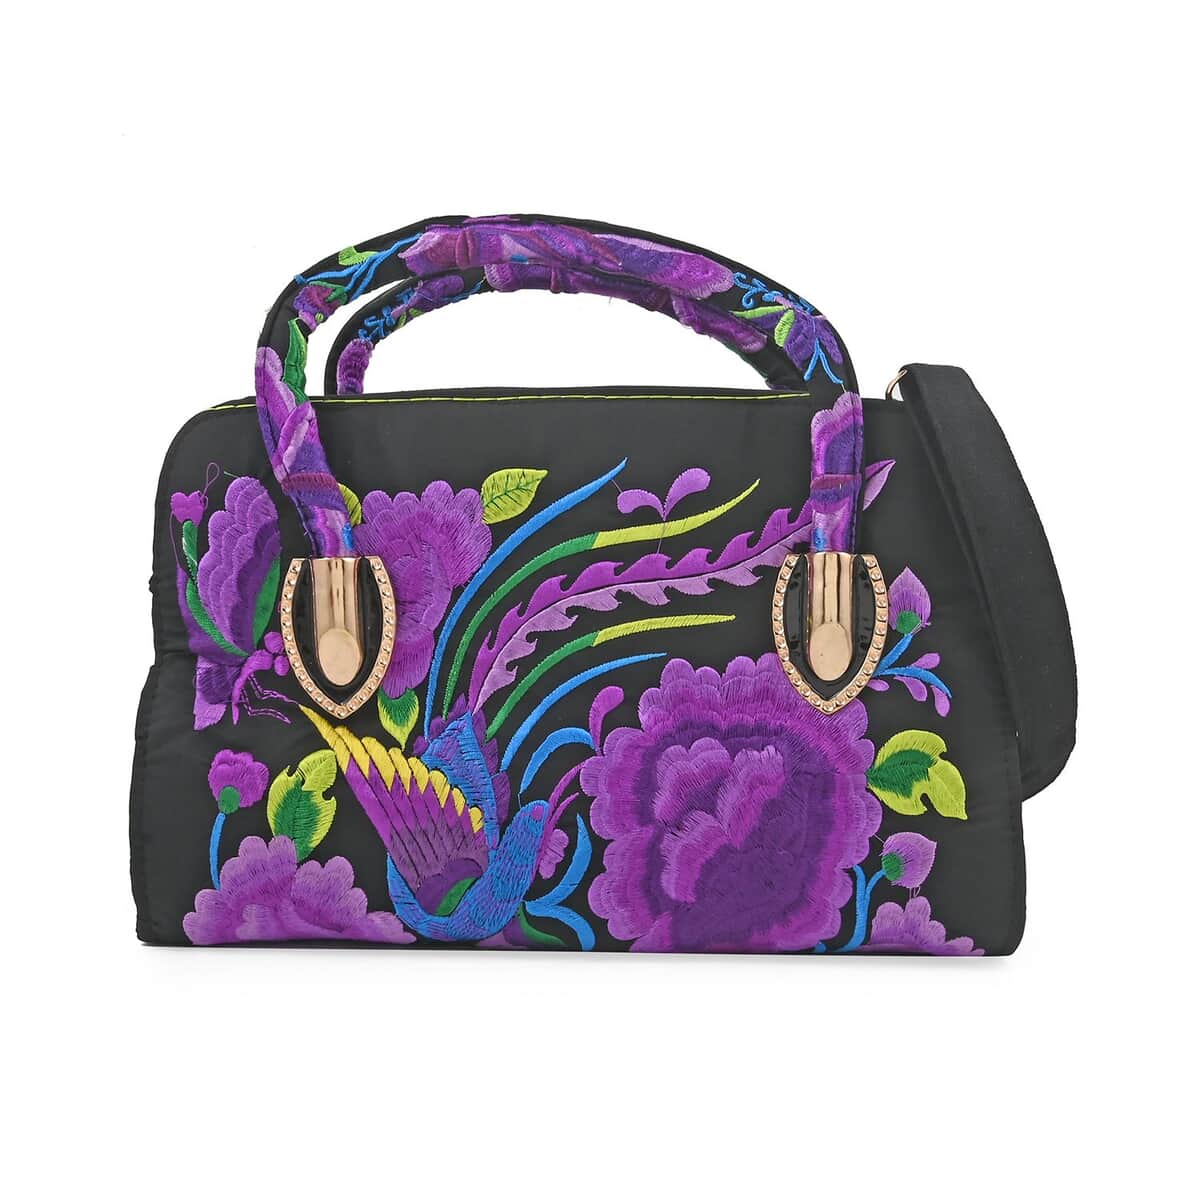 Purple Floral Embroidered Handbag with Shoulder Strap image number 0